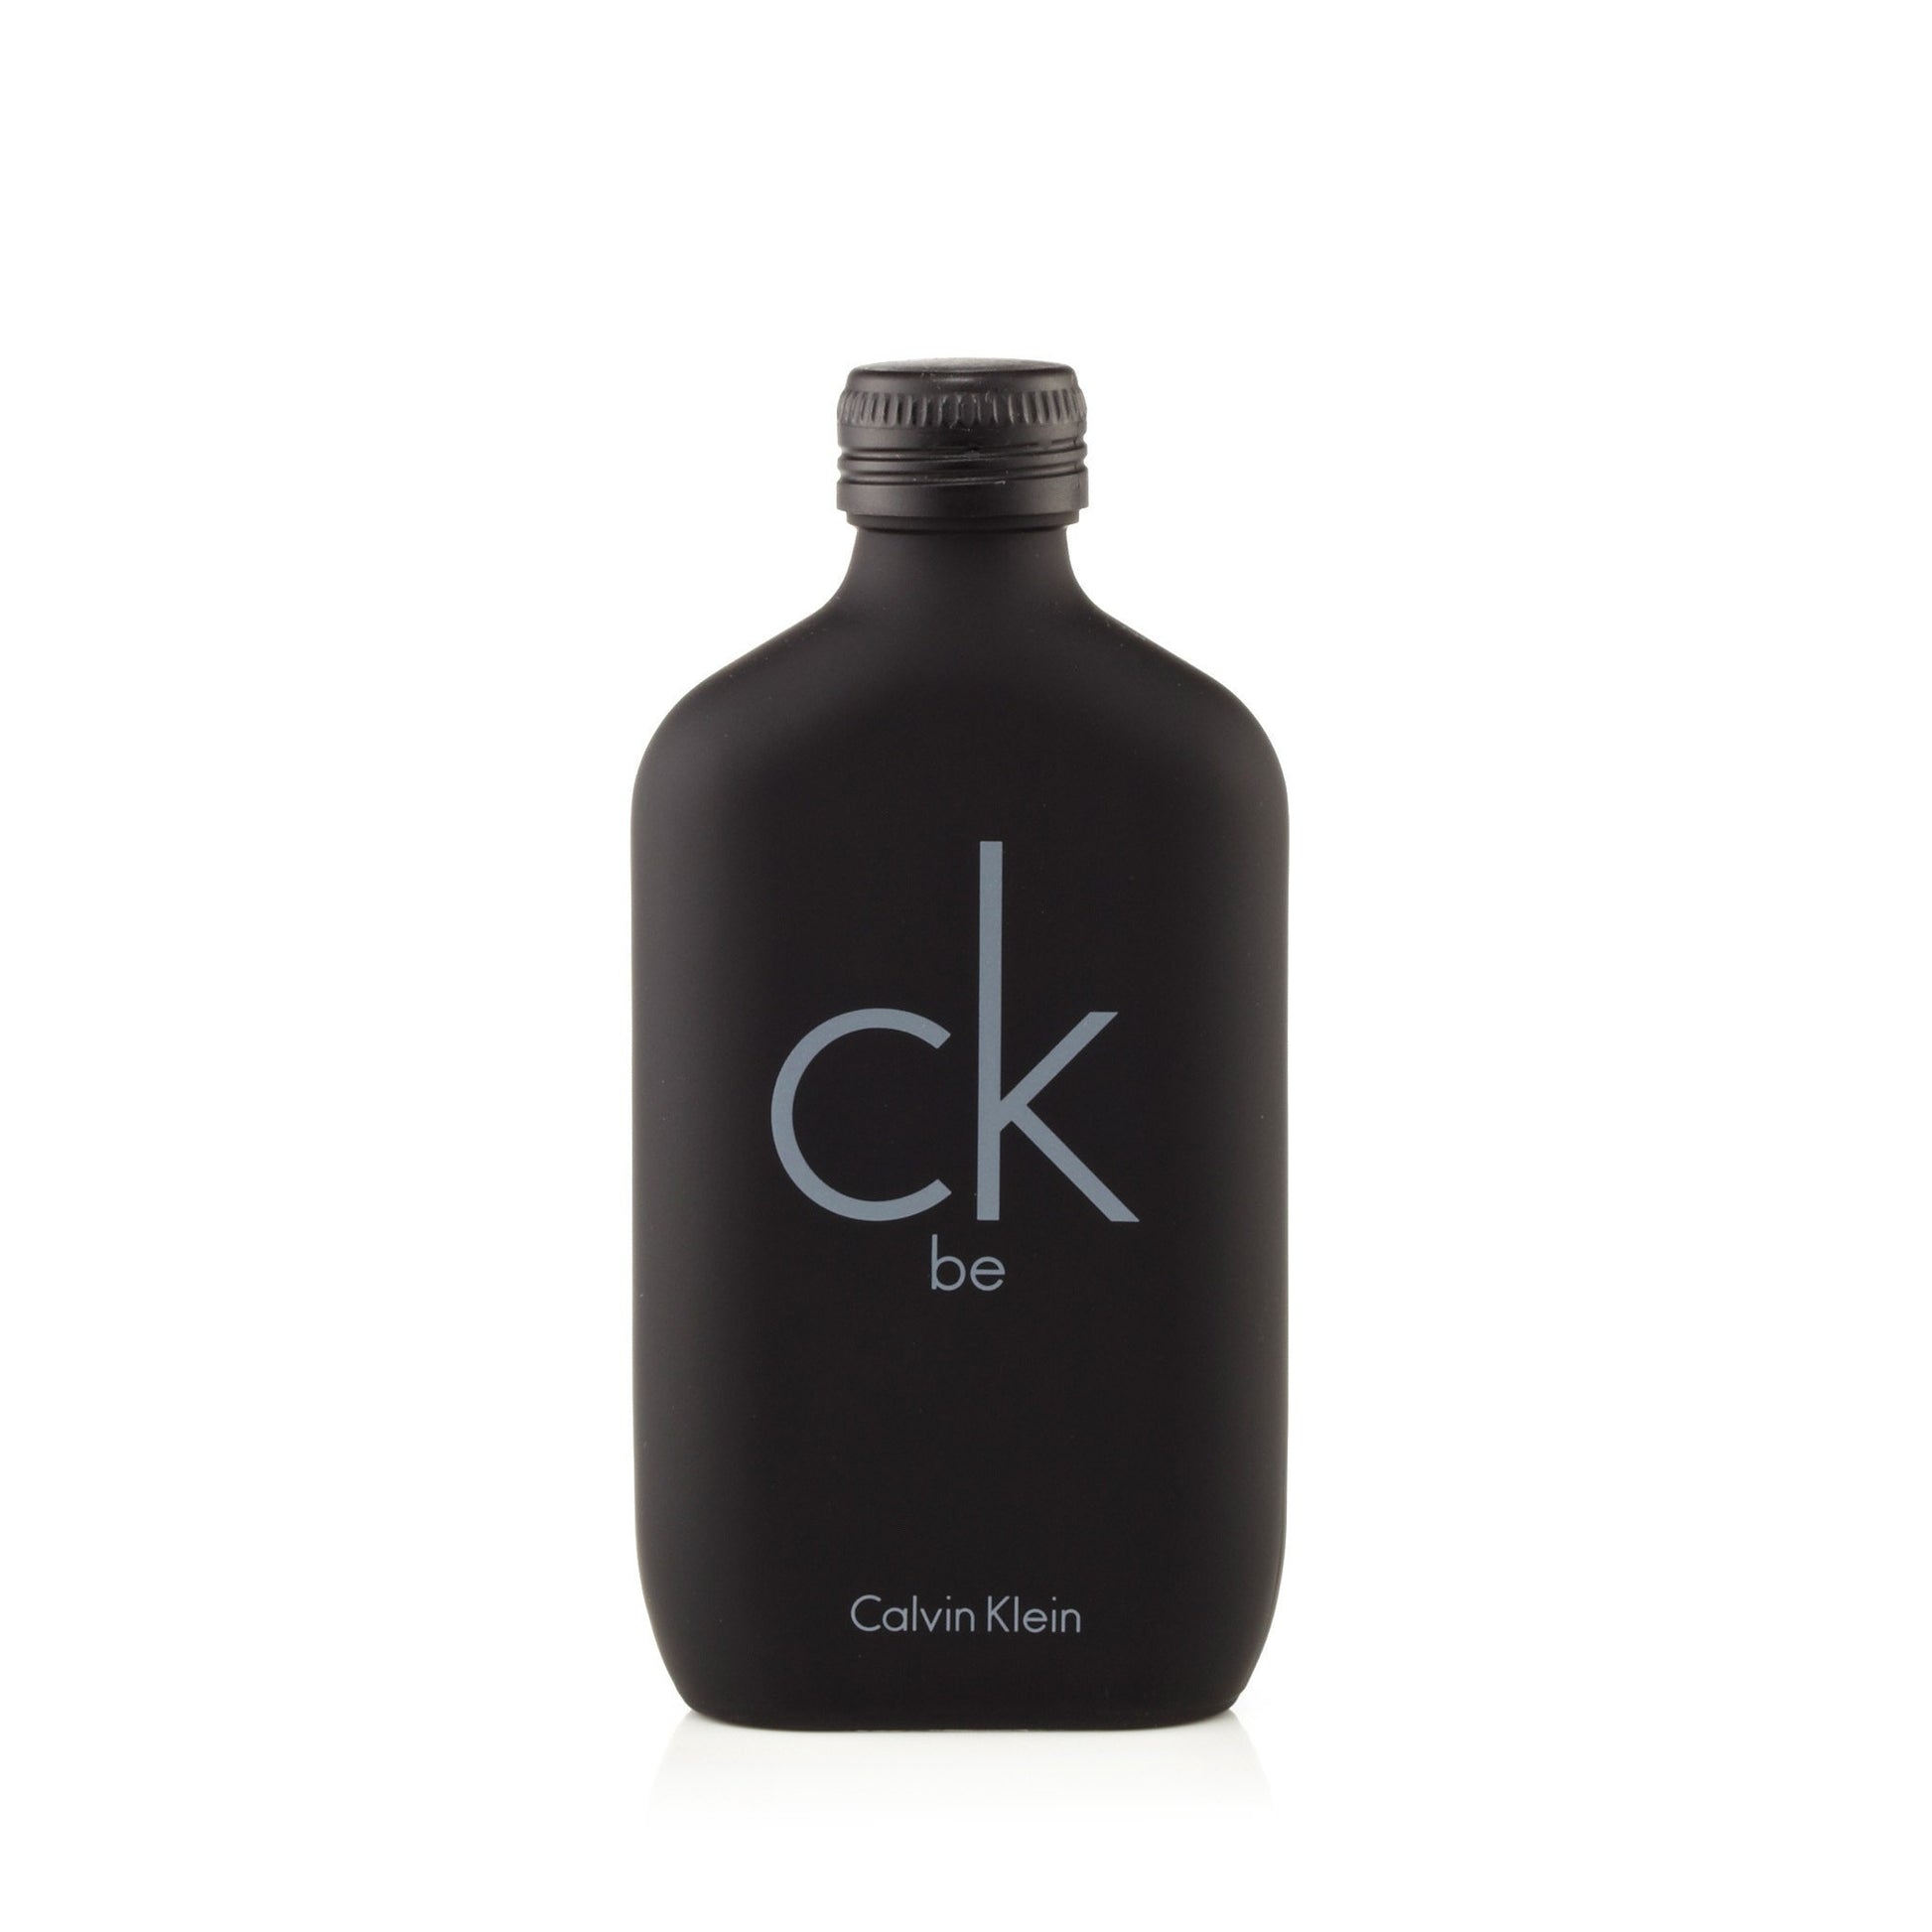 Be Eau de Toilette Spray for Men by Calvin Klein 3.4 oz. Click to open in modal